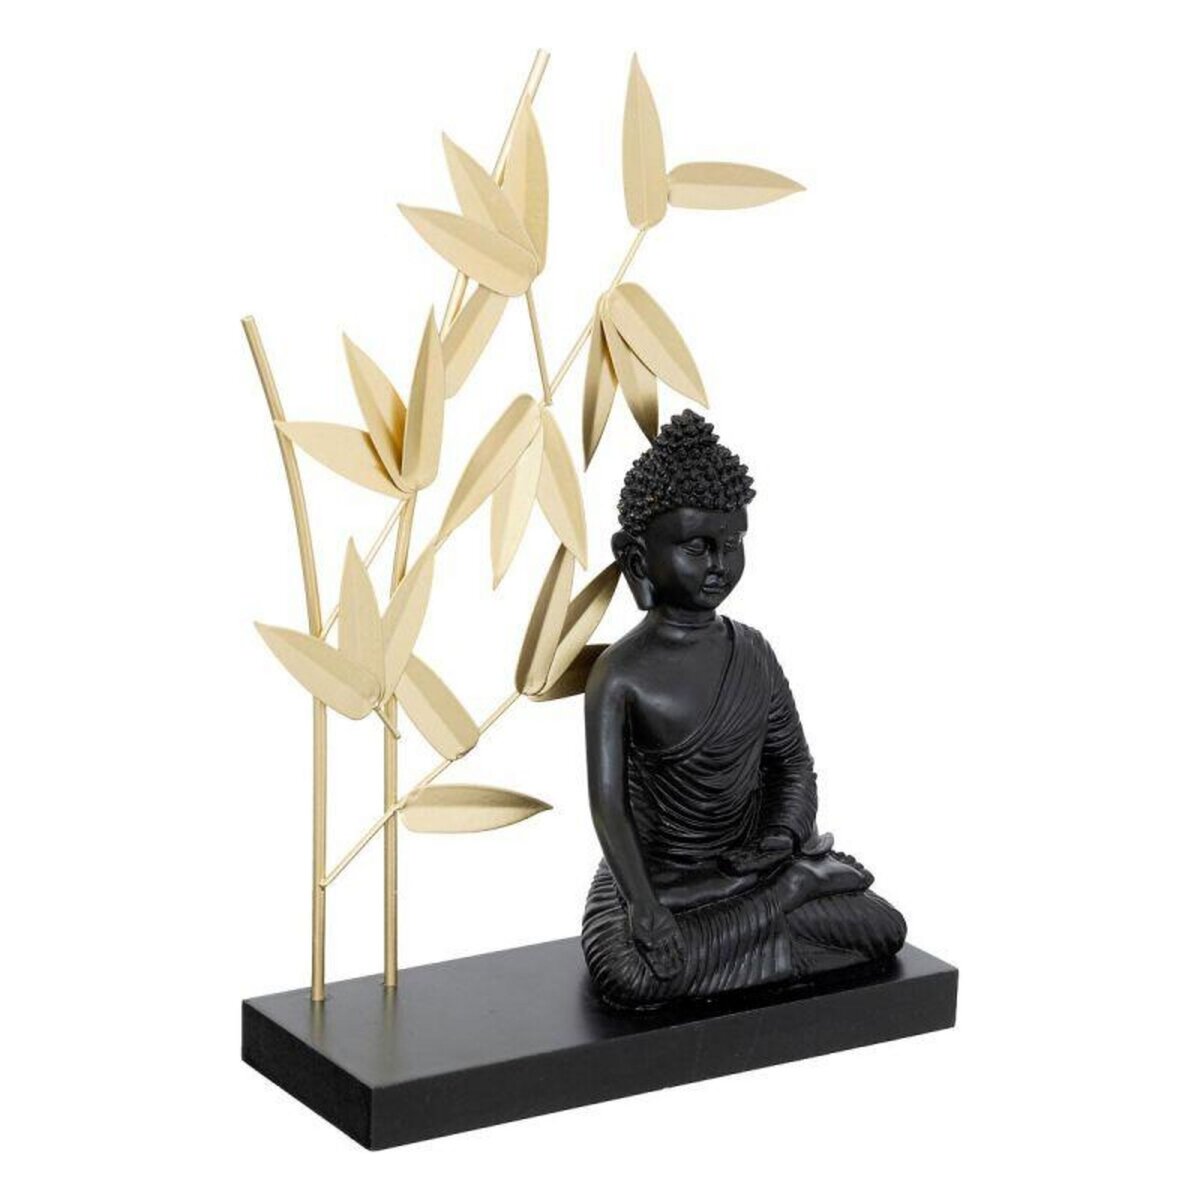  Statuette Déco Bouddha  Jiling  31cm Noir